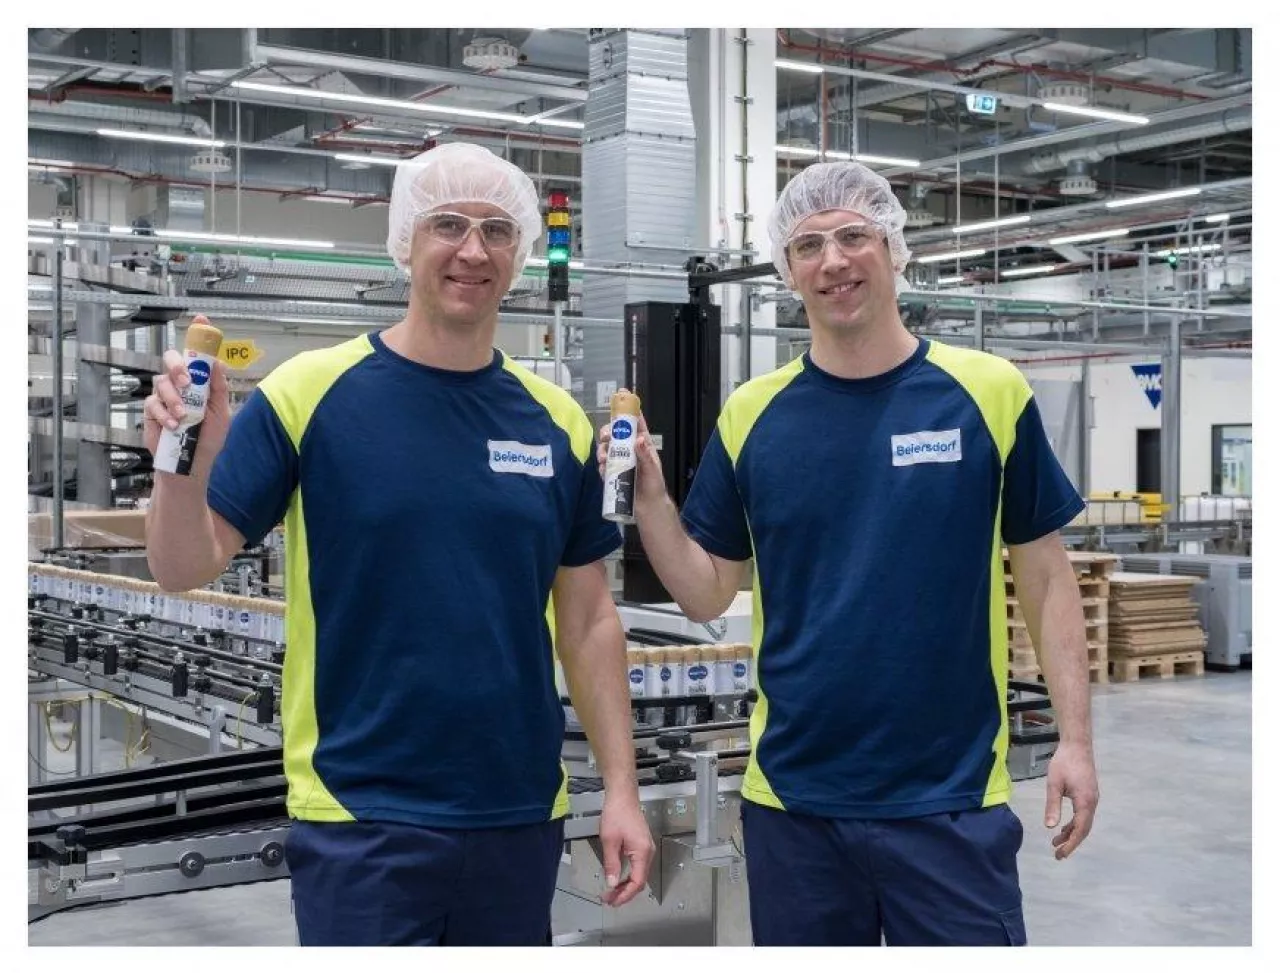 Tobias Rhensius, dyrektor projektu, który nadzorował budowę zakładu w Lipsku, oraz Stephan Roelen, dyrektor zakładu Beiersdorf w Lipsku